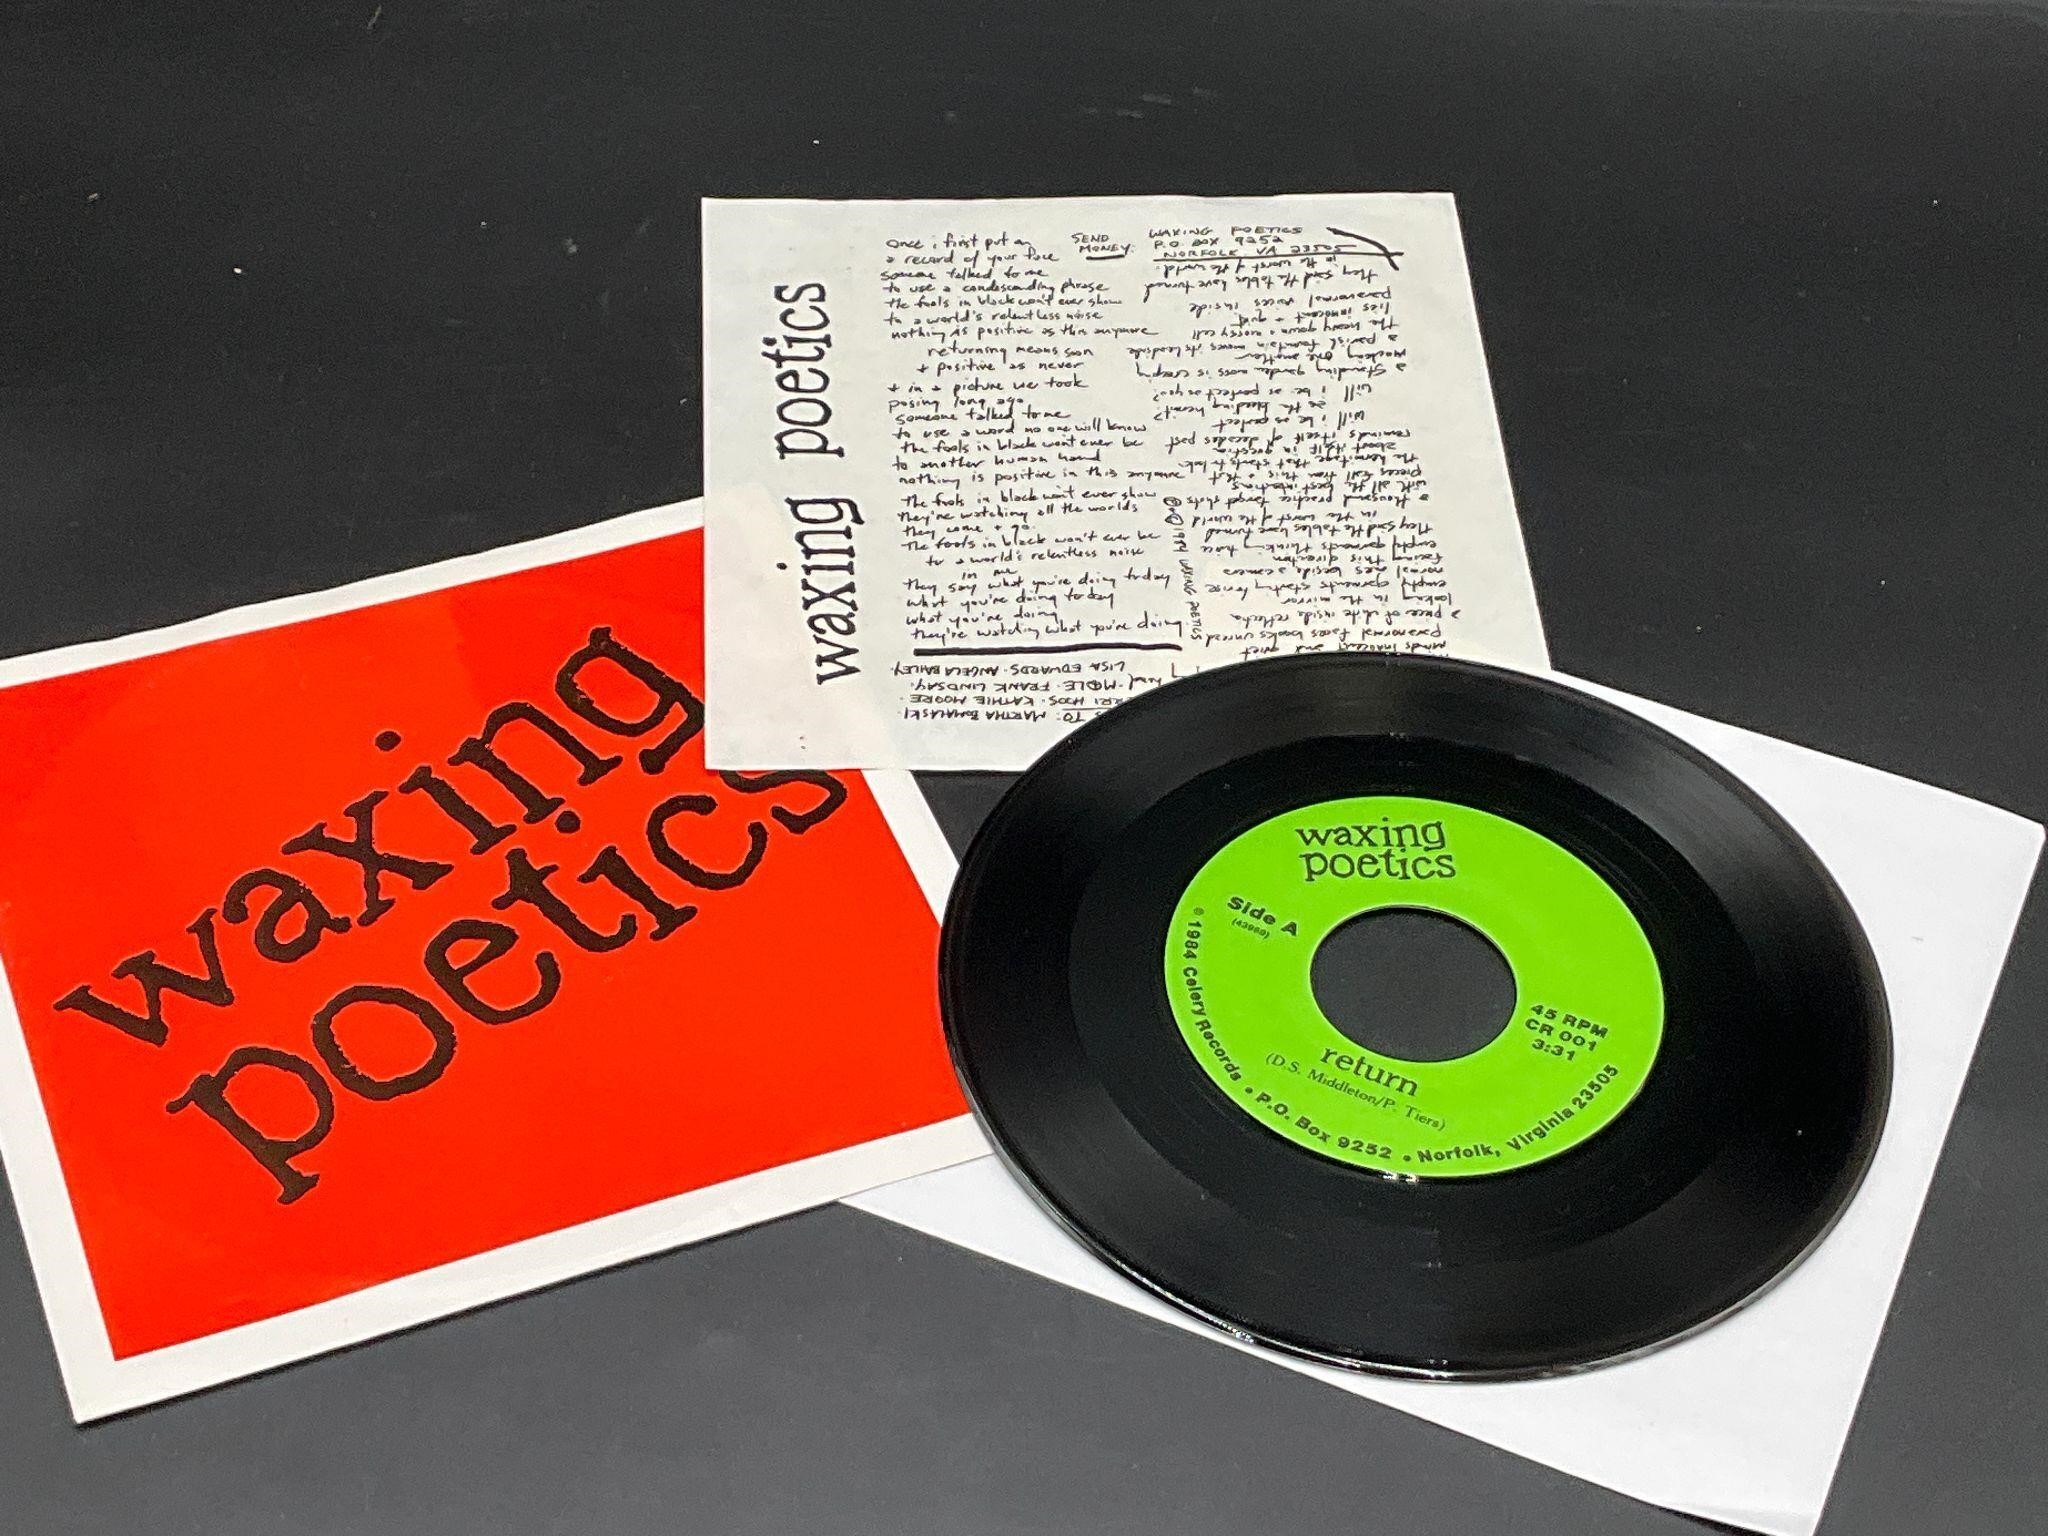 1984 Waxing Poetics "Hermitage" Vinyl 7" Single